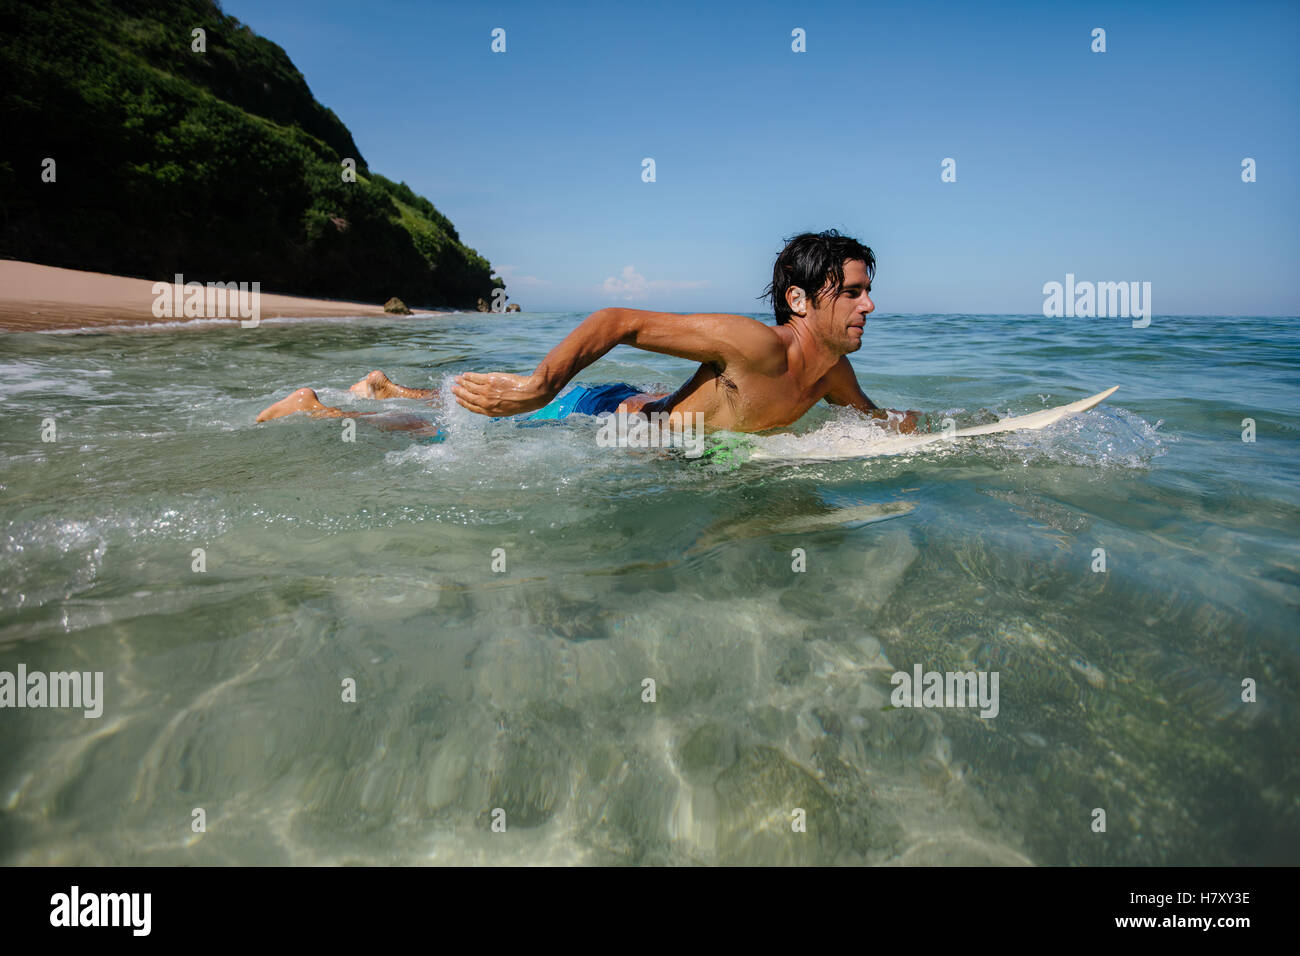 Vue latérale de l'eau coup de jeune homme surf dans l'océan. Homme surfer dans l'eau de mer avec planche de surf. Banque D'Images